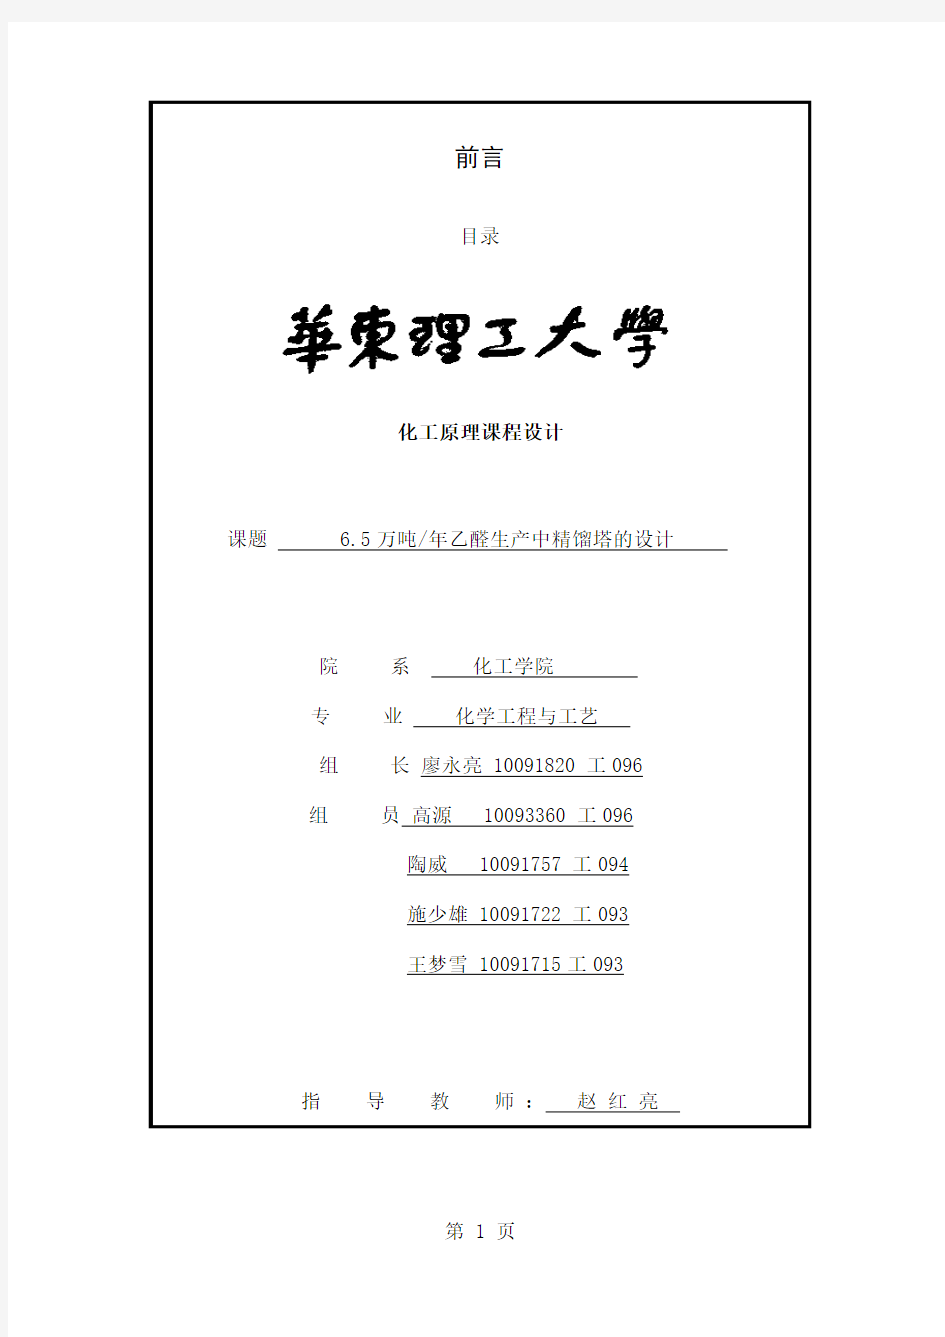 化工原理课程设计任务书 zong (修复的)共32页